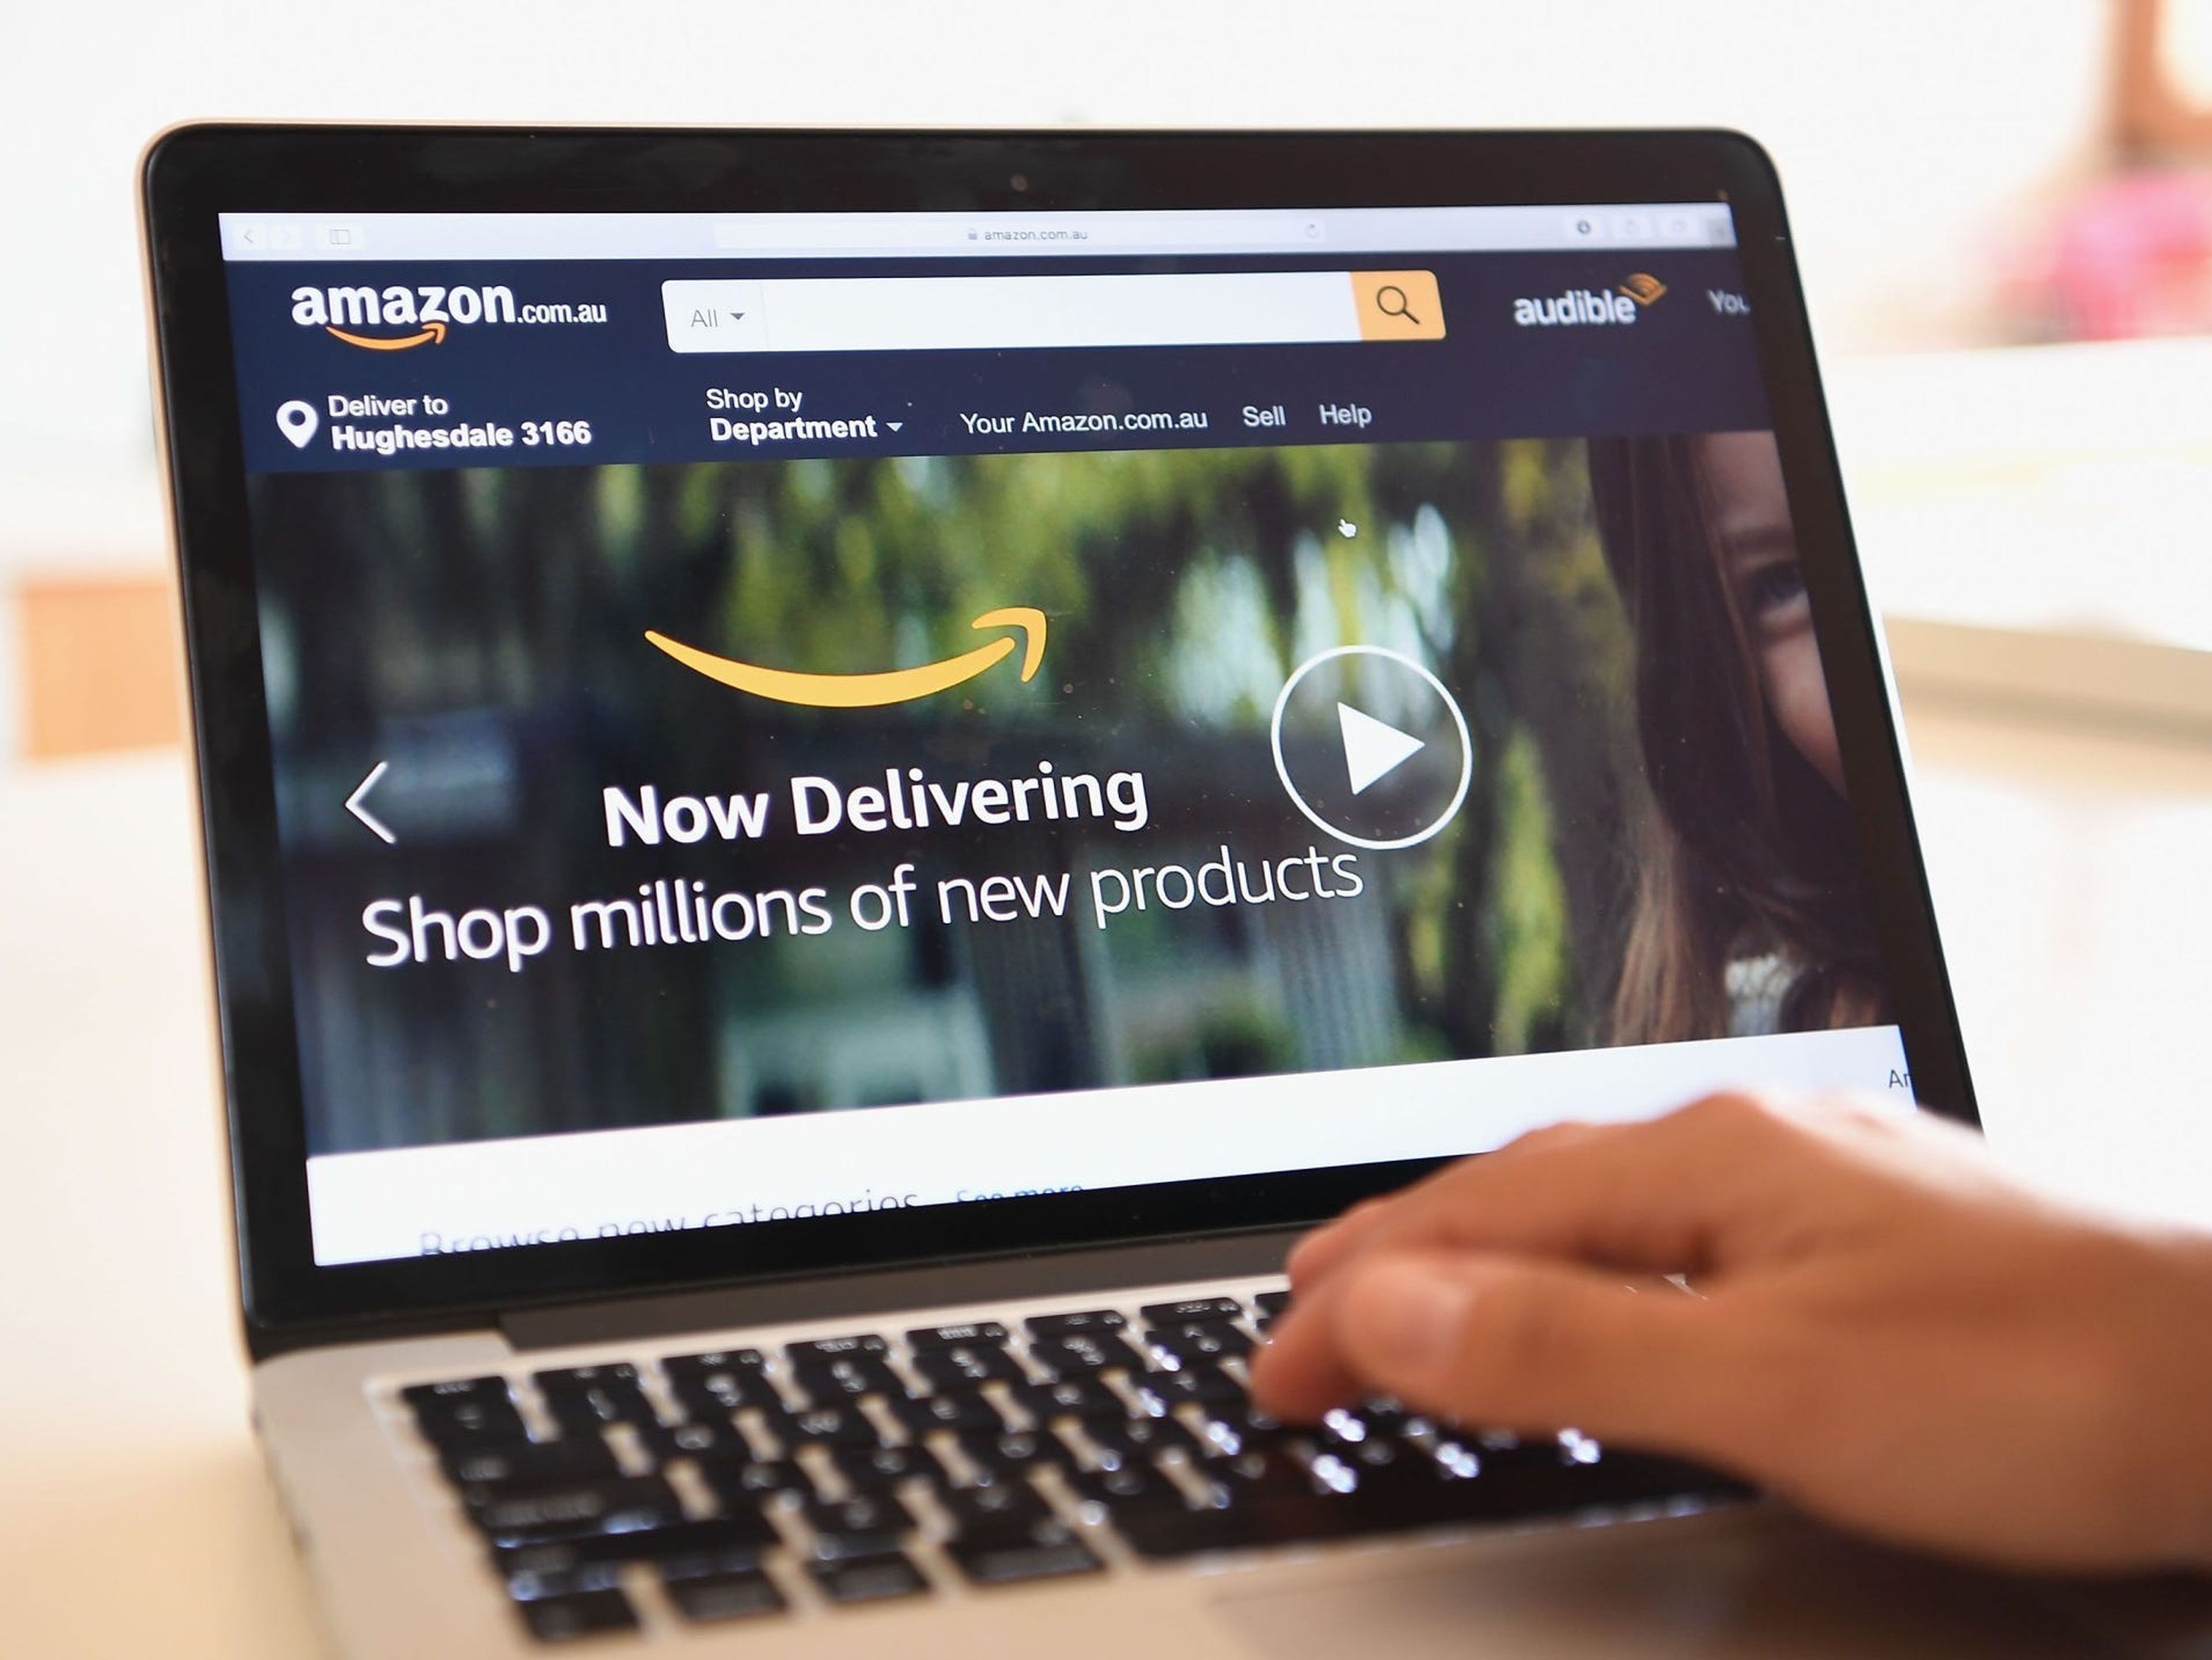 Se descubrieron anuncios de servicios de Amazon en más de 30 webs, según el análisis. Quinn Rooney/Getty Images